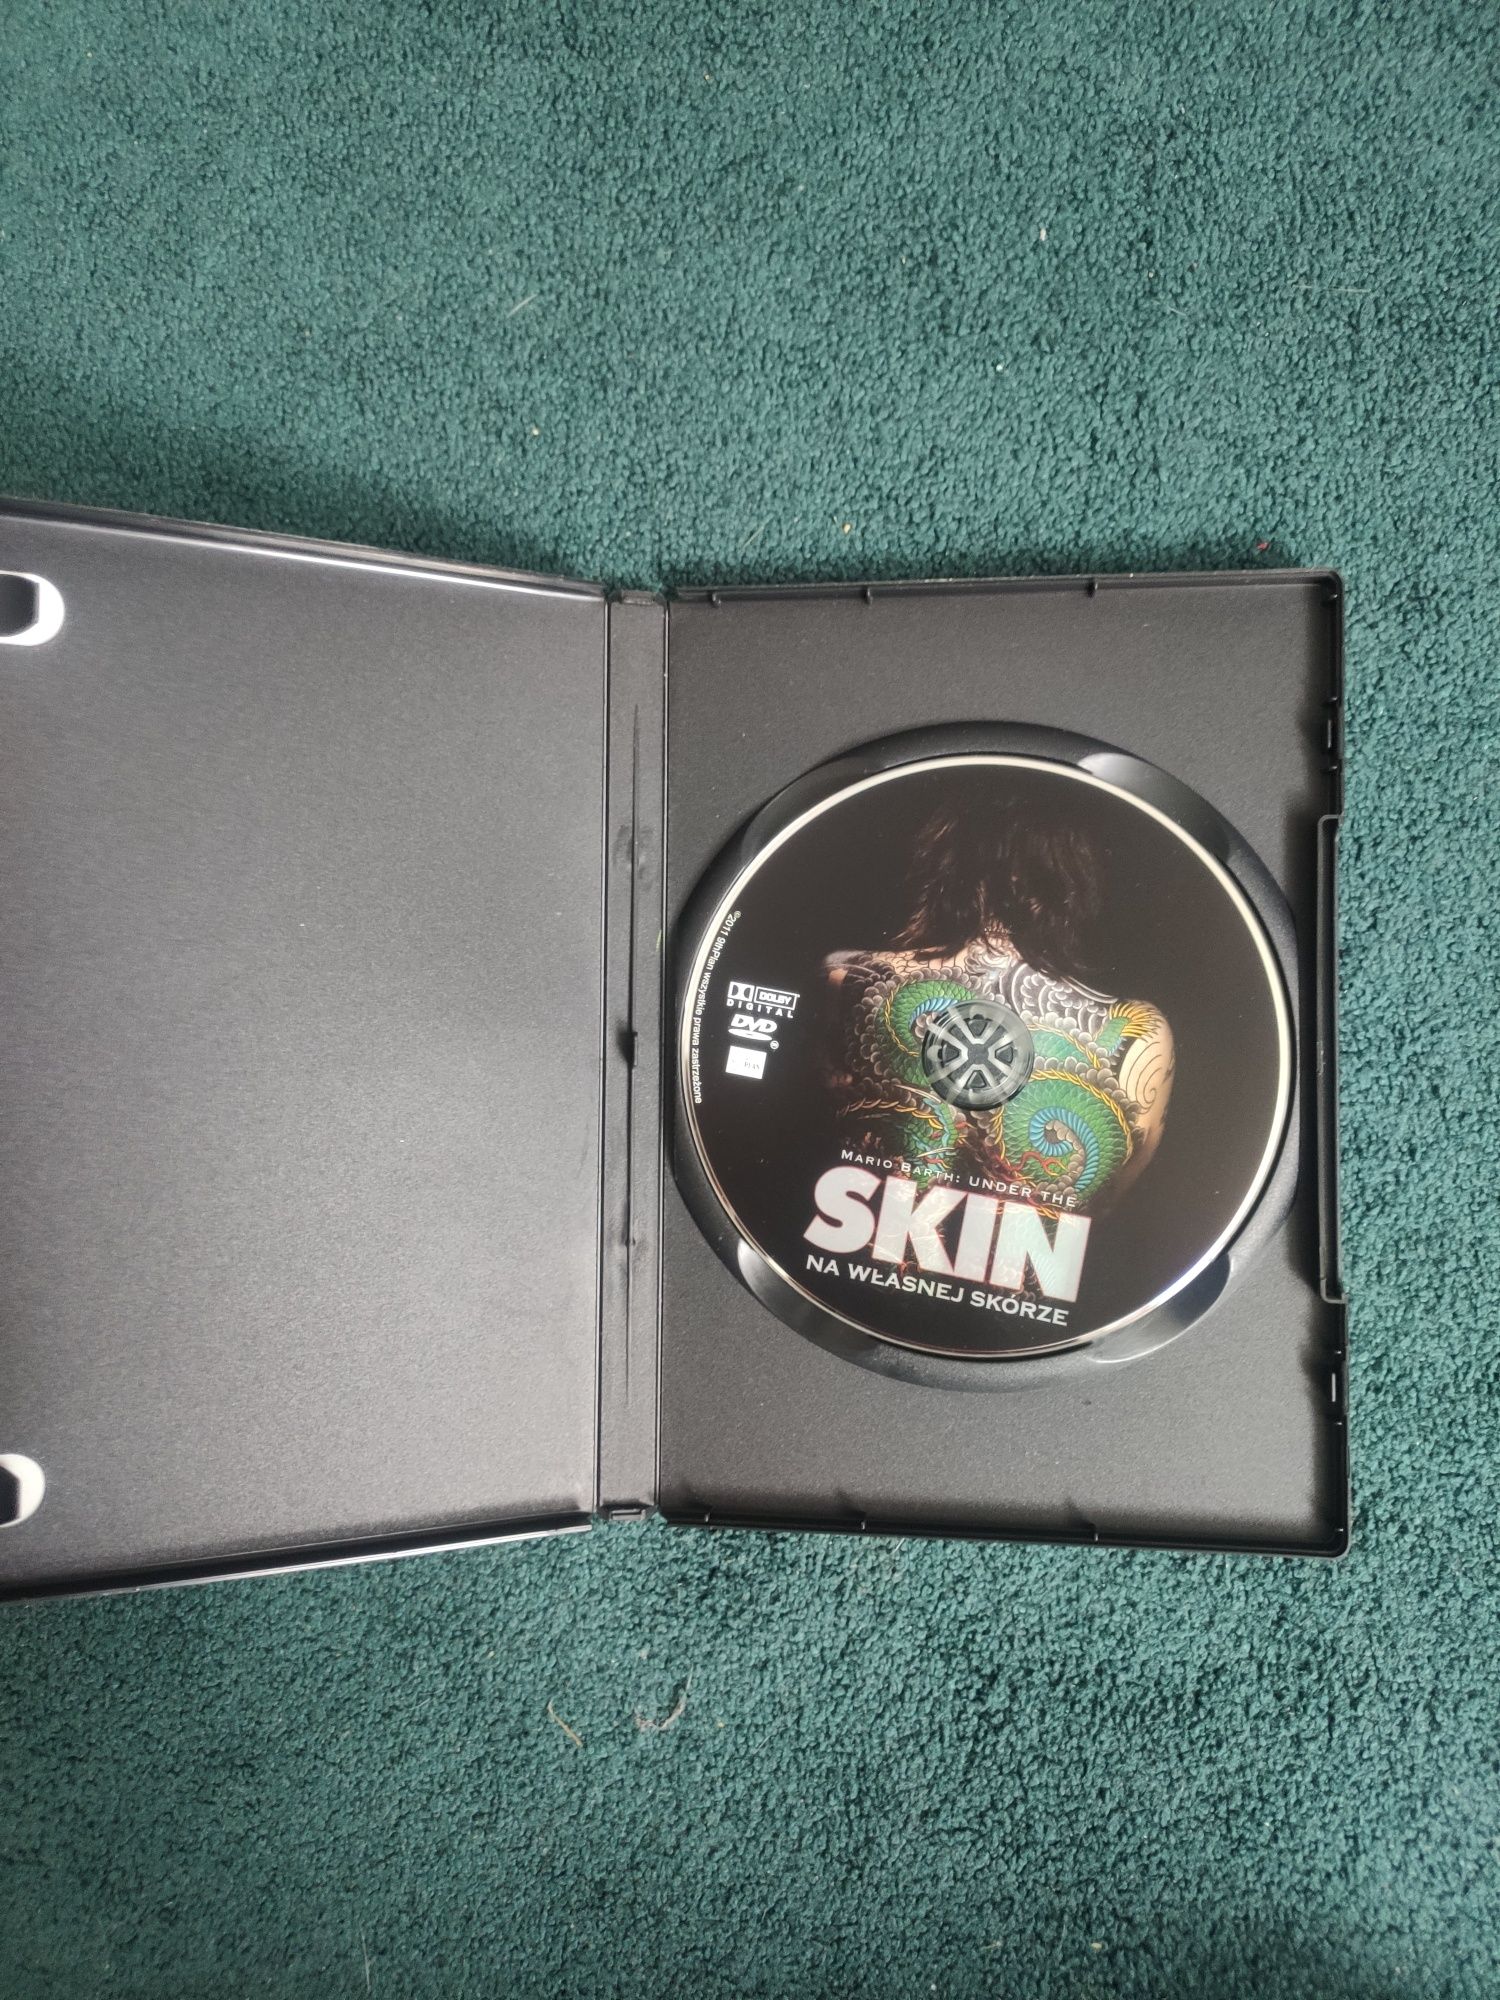 DVD Film Skin Tattoo